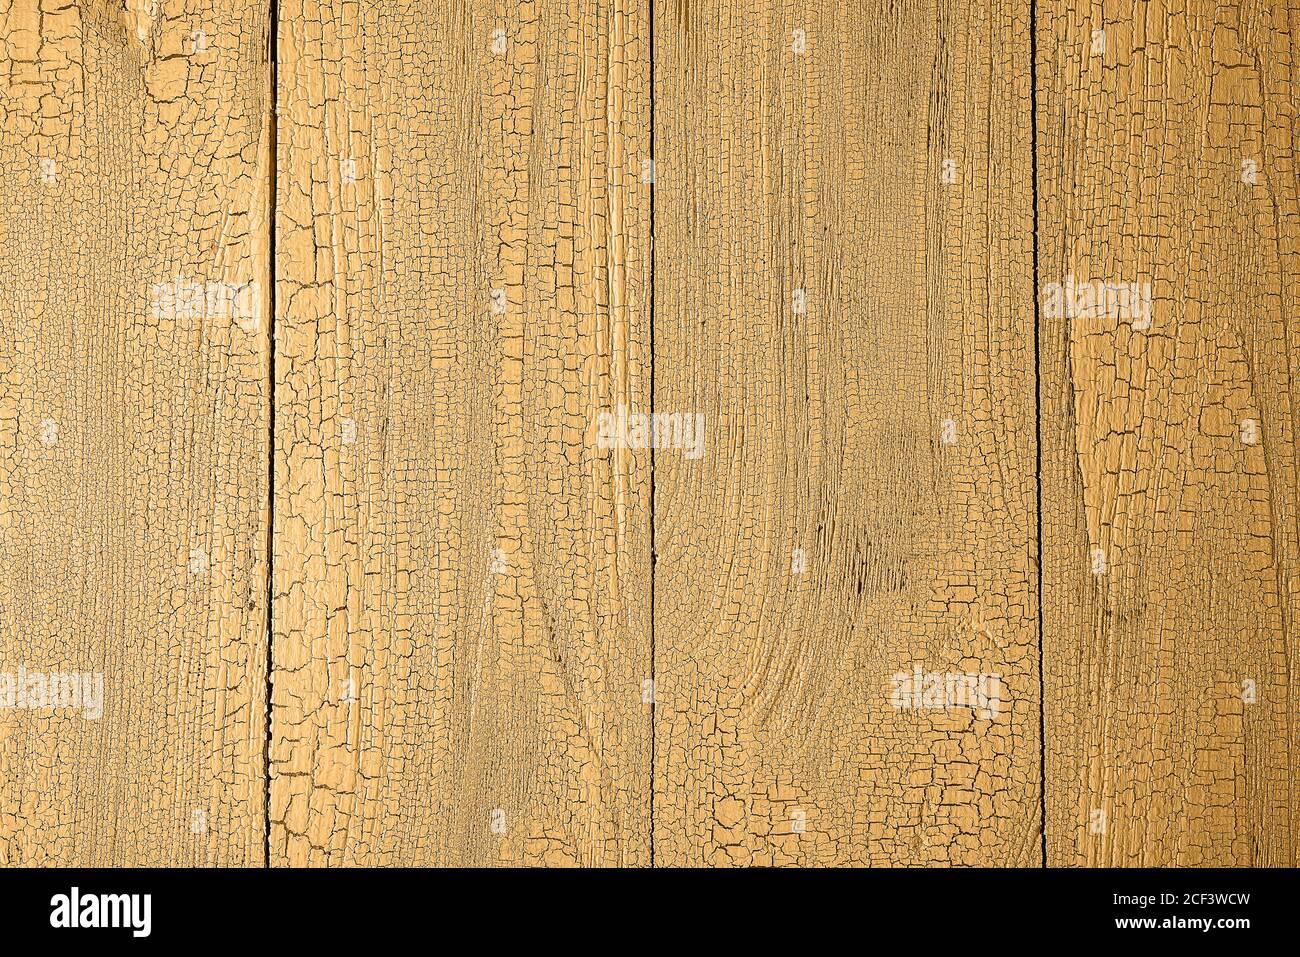 Nahaufnahme von natürlichen alten Holzplanken in Honig dijon Farbe mit Rissen getönt. Hintergrund mit vertikalem Boarding und Kopierraum. Blick vom direkt abo Stockfoto